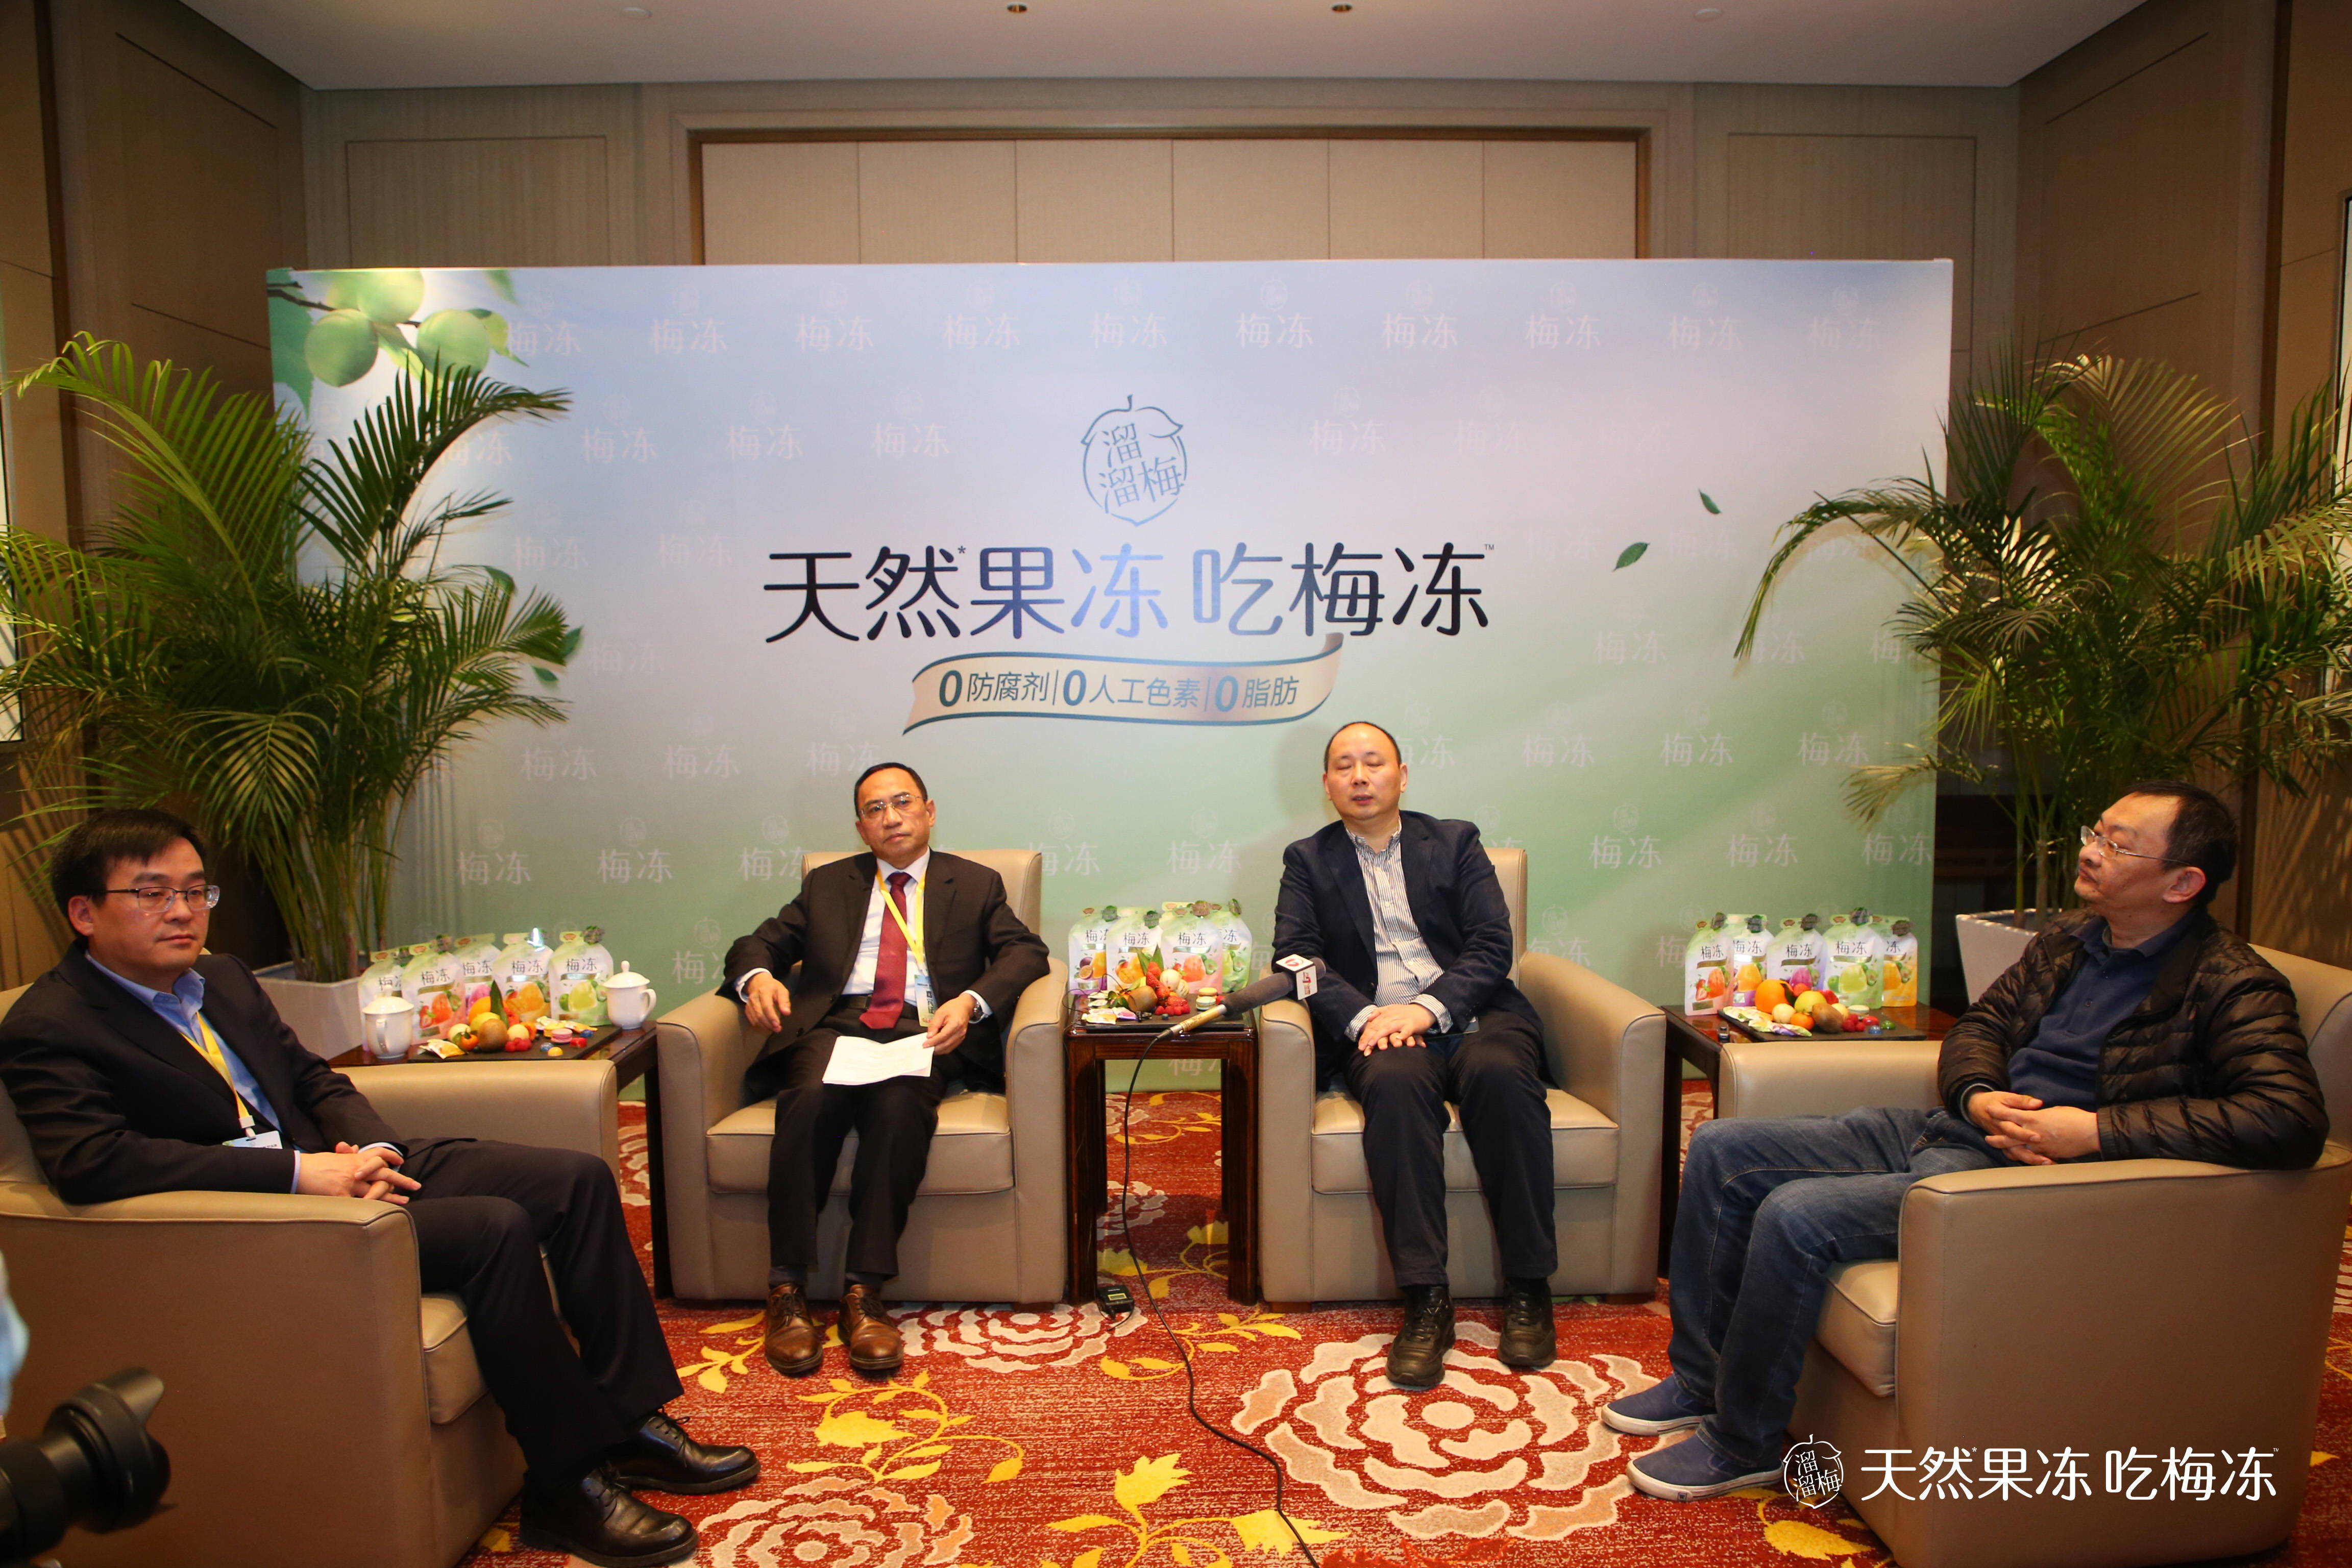 《中国新闻周刊》专访溜溜梅创始人杨帆：“要把梅冻做到极致” 